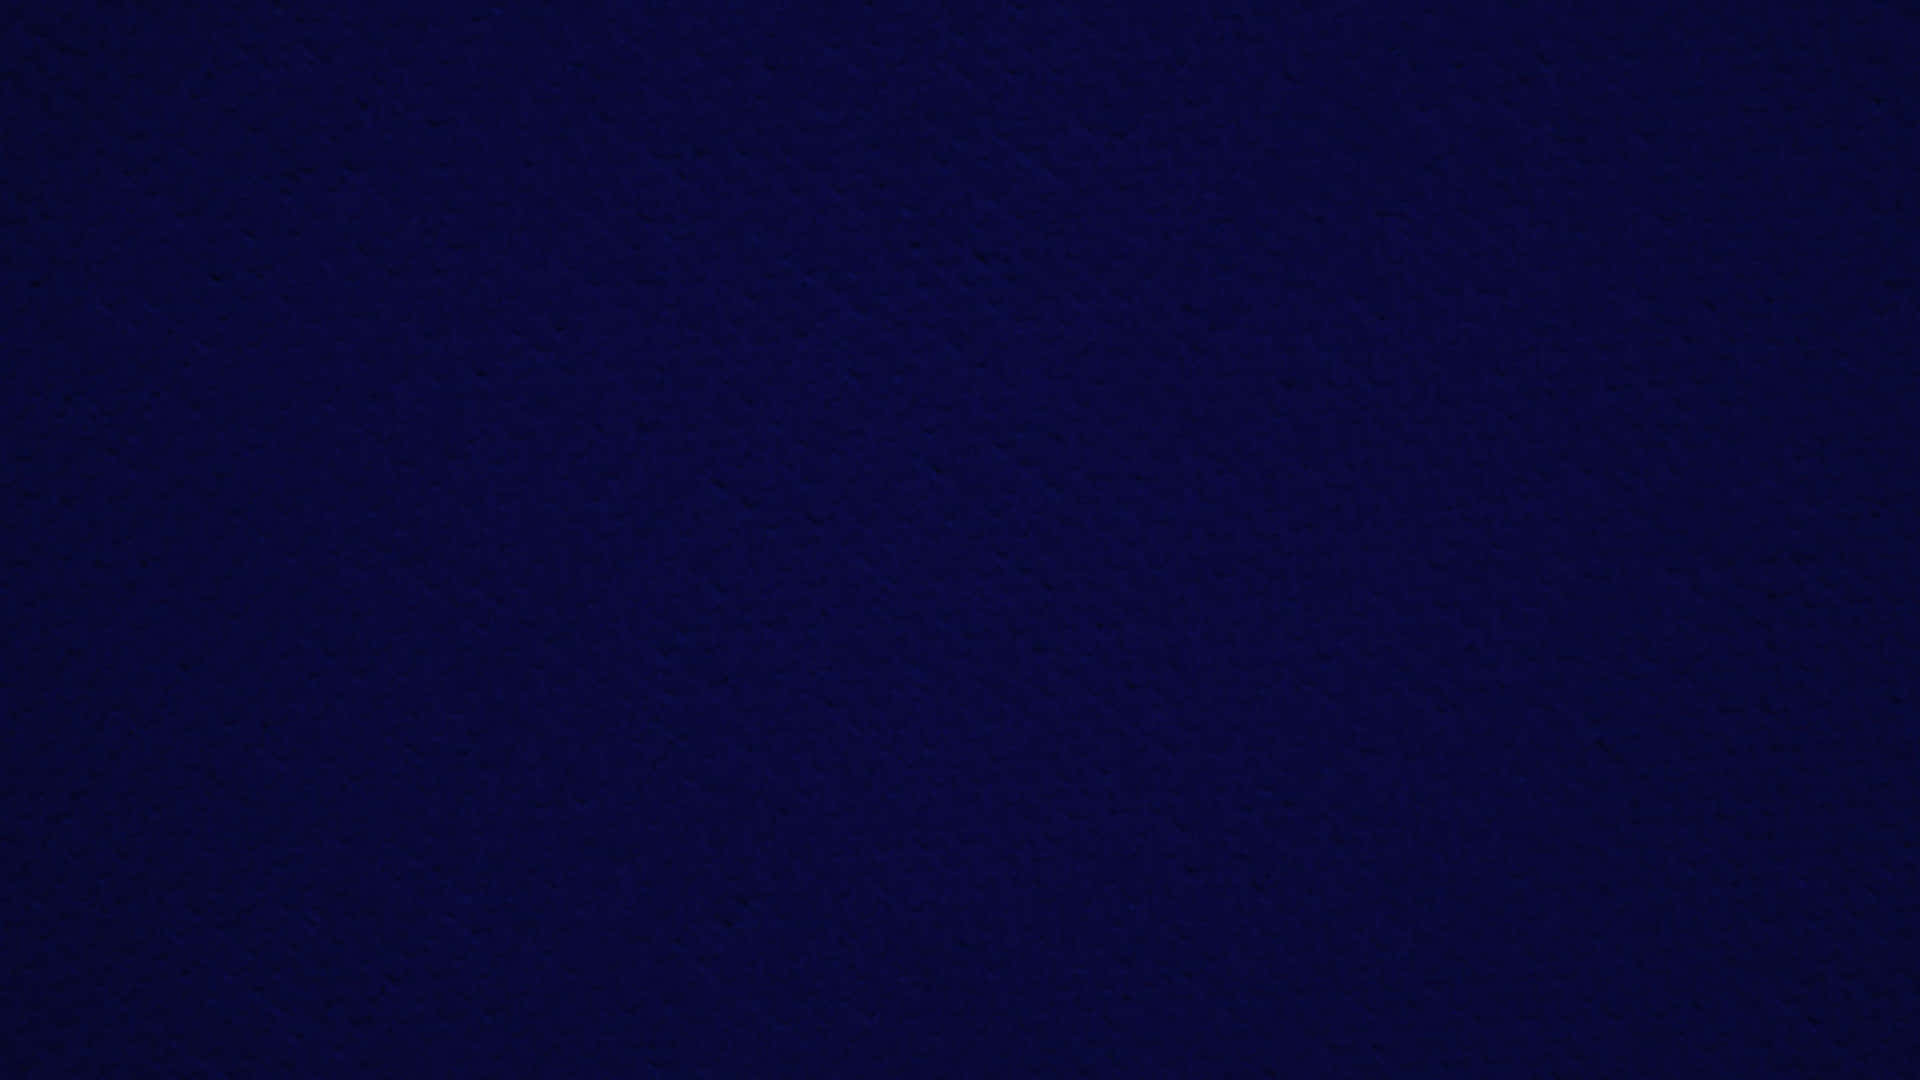 50+] Dark Blue Wallpapers HD - WallpaperSafari